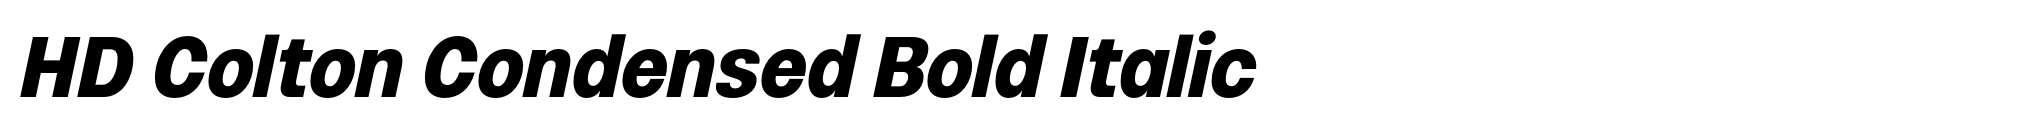 HD Colton Condensed Bold Italic image